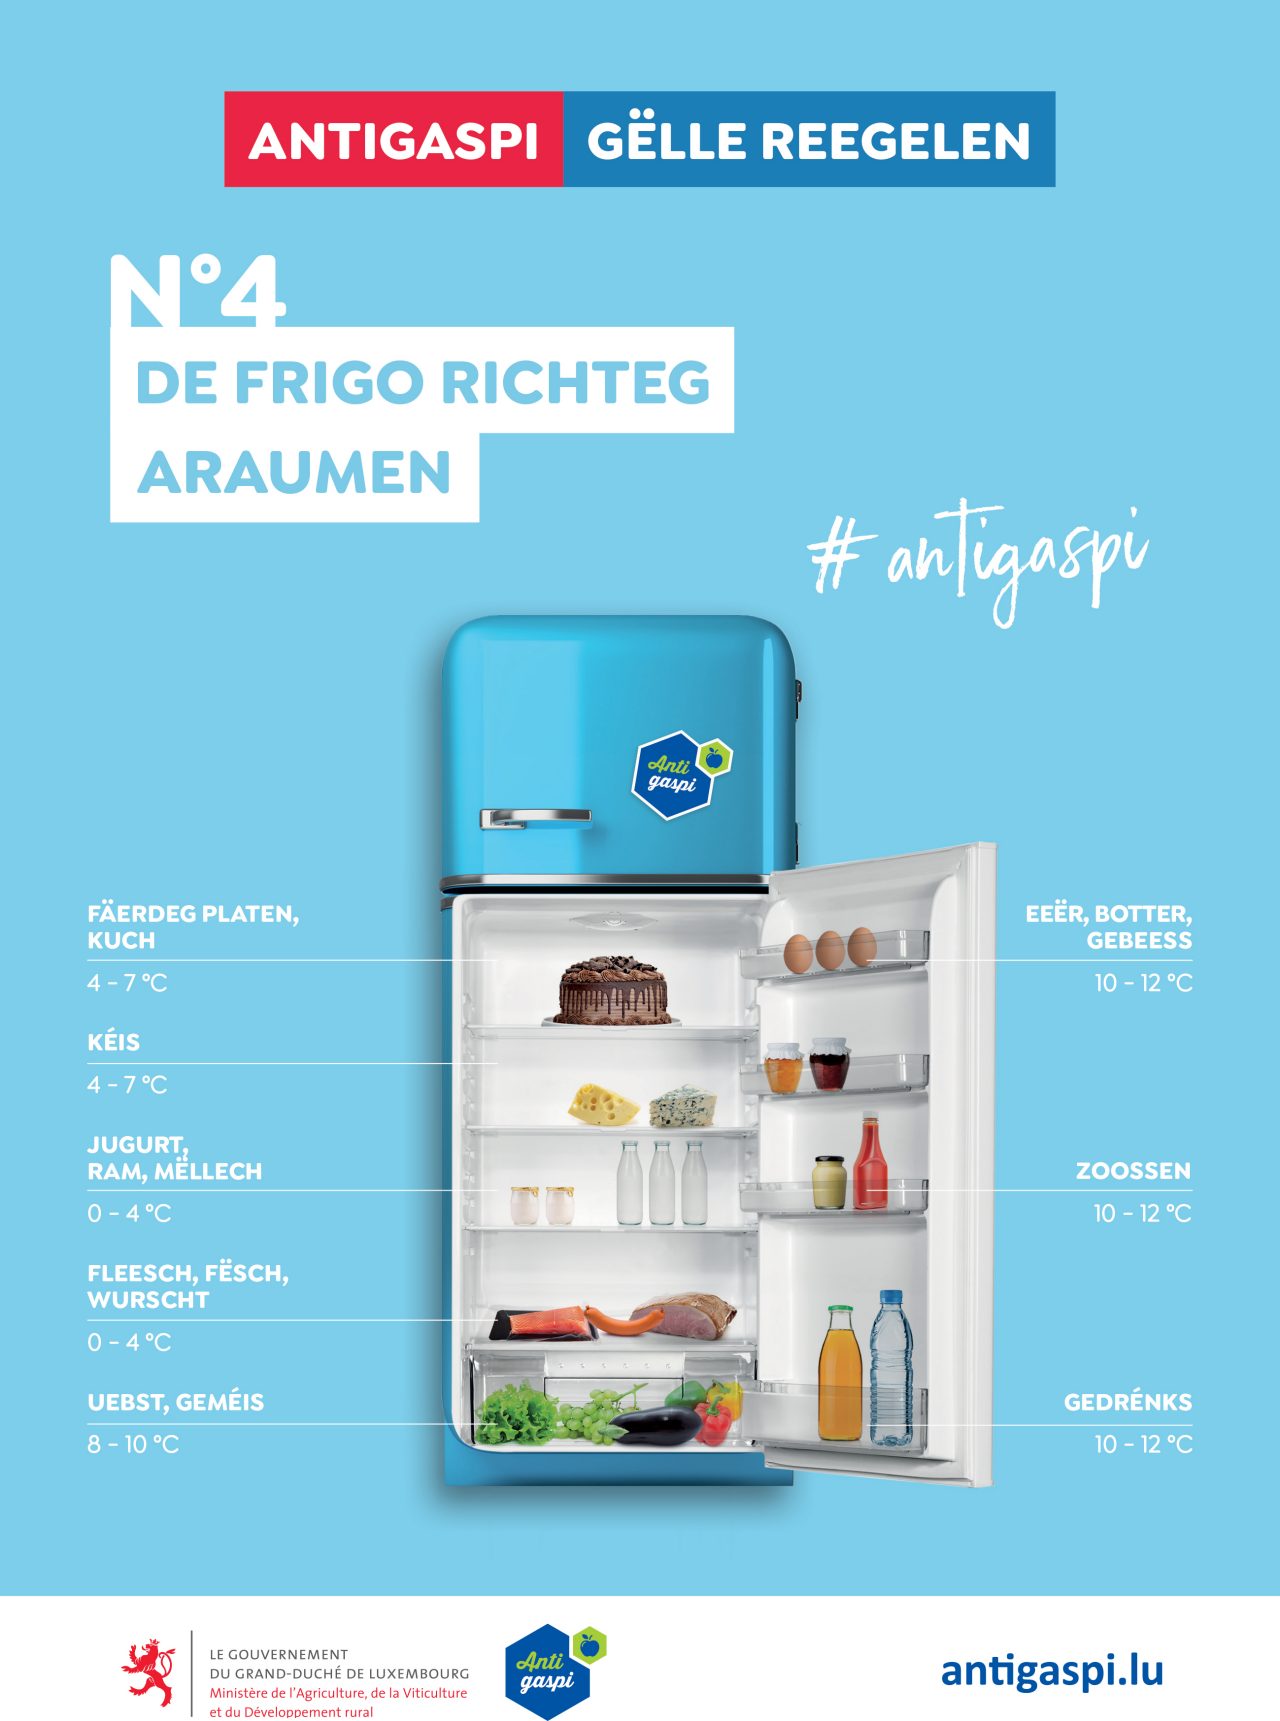 Die goldene Regel Nummer 4 „Den Kühlschrank richtig einräumen“ ist mit einem offenen Kühlschrank illustriert, in dem Lebensmittel in den richtigen Temperaturzonen stehen. 